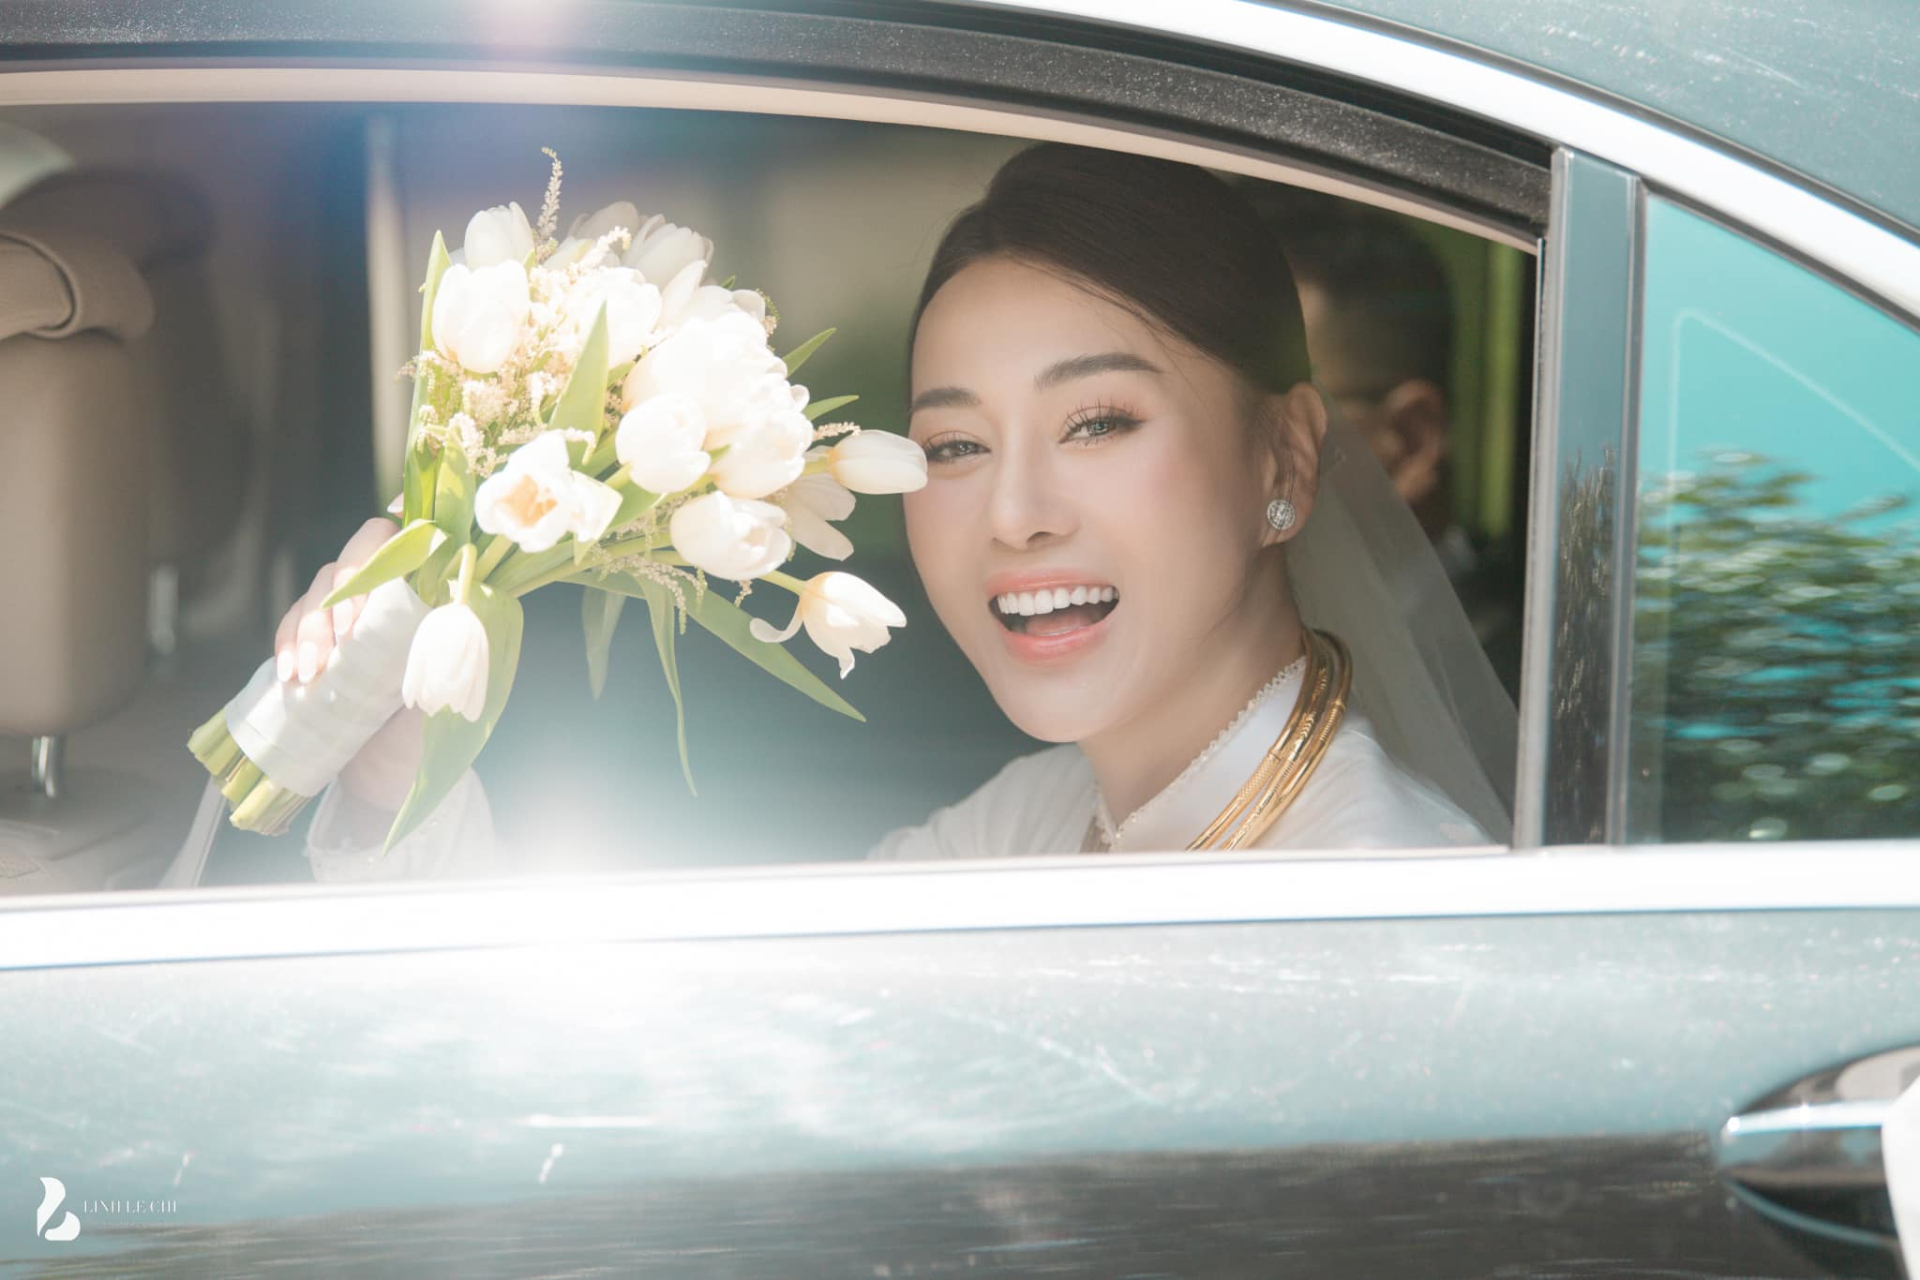 Diễn viên Phương Oanh đi thử váy cưới, ấn định tổ chức hôn lễ cổ tích với Shark Bình sau 2 tháng ăn hỏi - ảnh 5